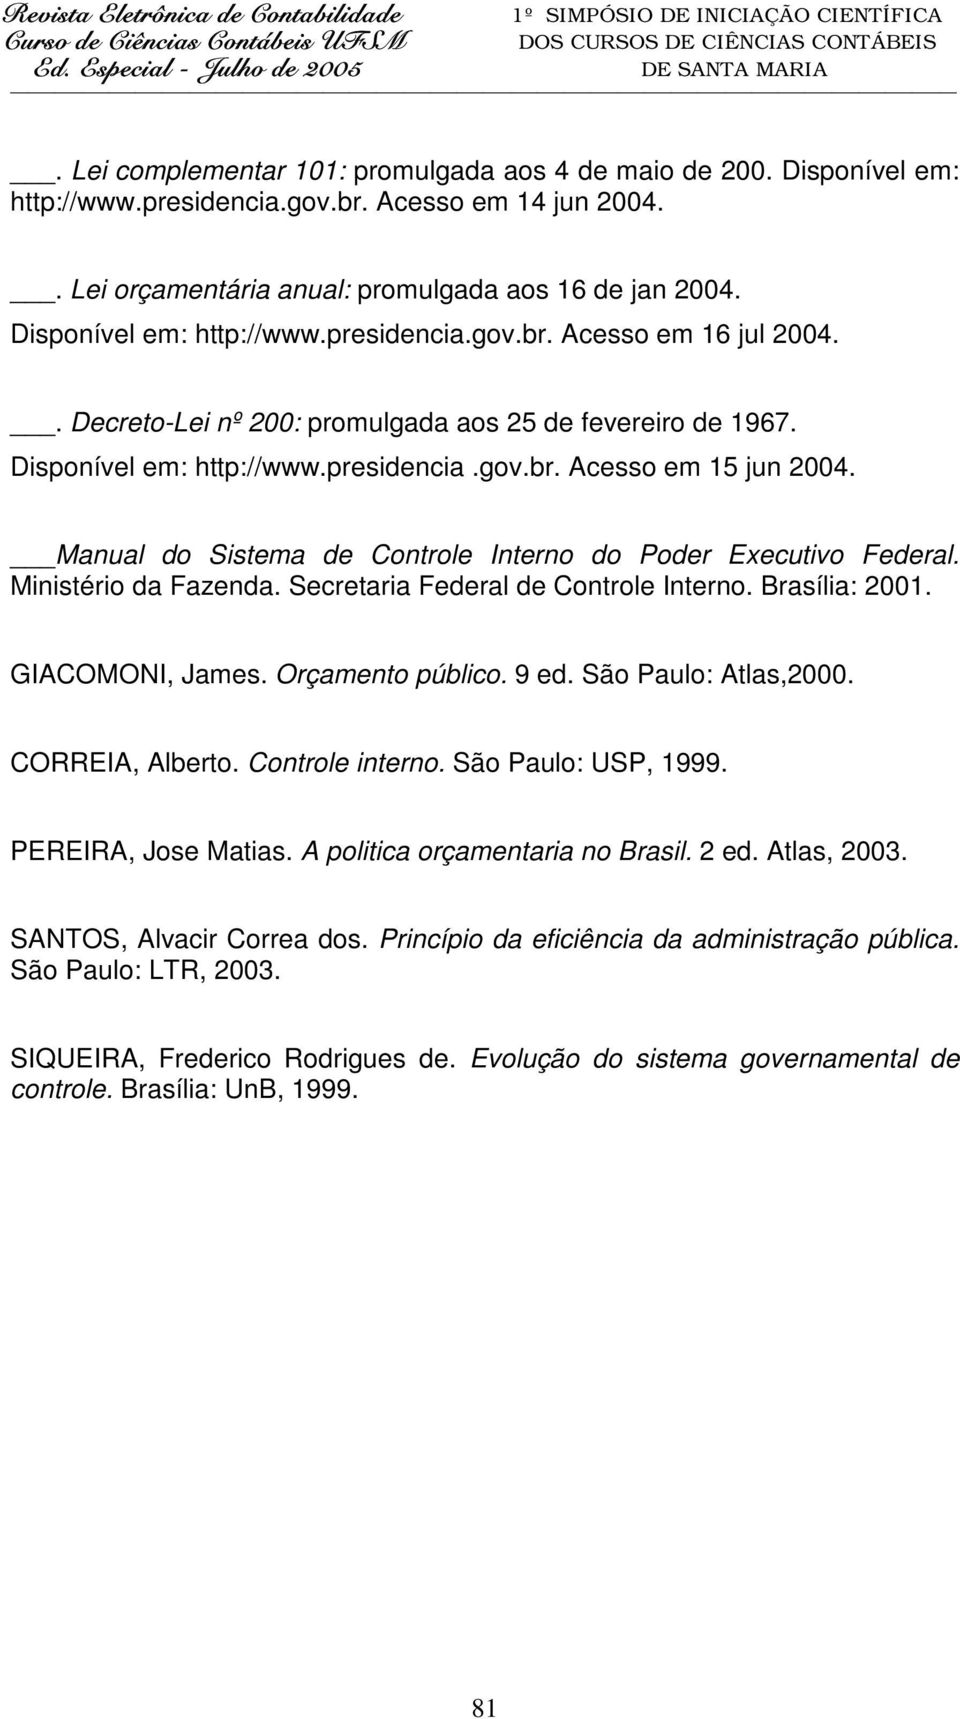 Manual do Sistema de Controle Interno do Poder Executivo Federal. Ministério da Fazenda. Secretaria Federal de Controle Interno. Brasília: 2001. GIACOMONI, James. Orçamento público. 9 ed.